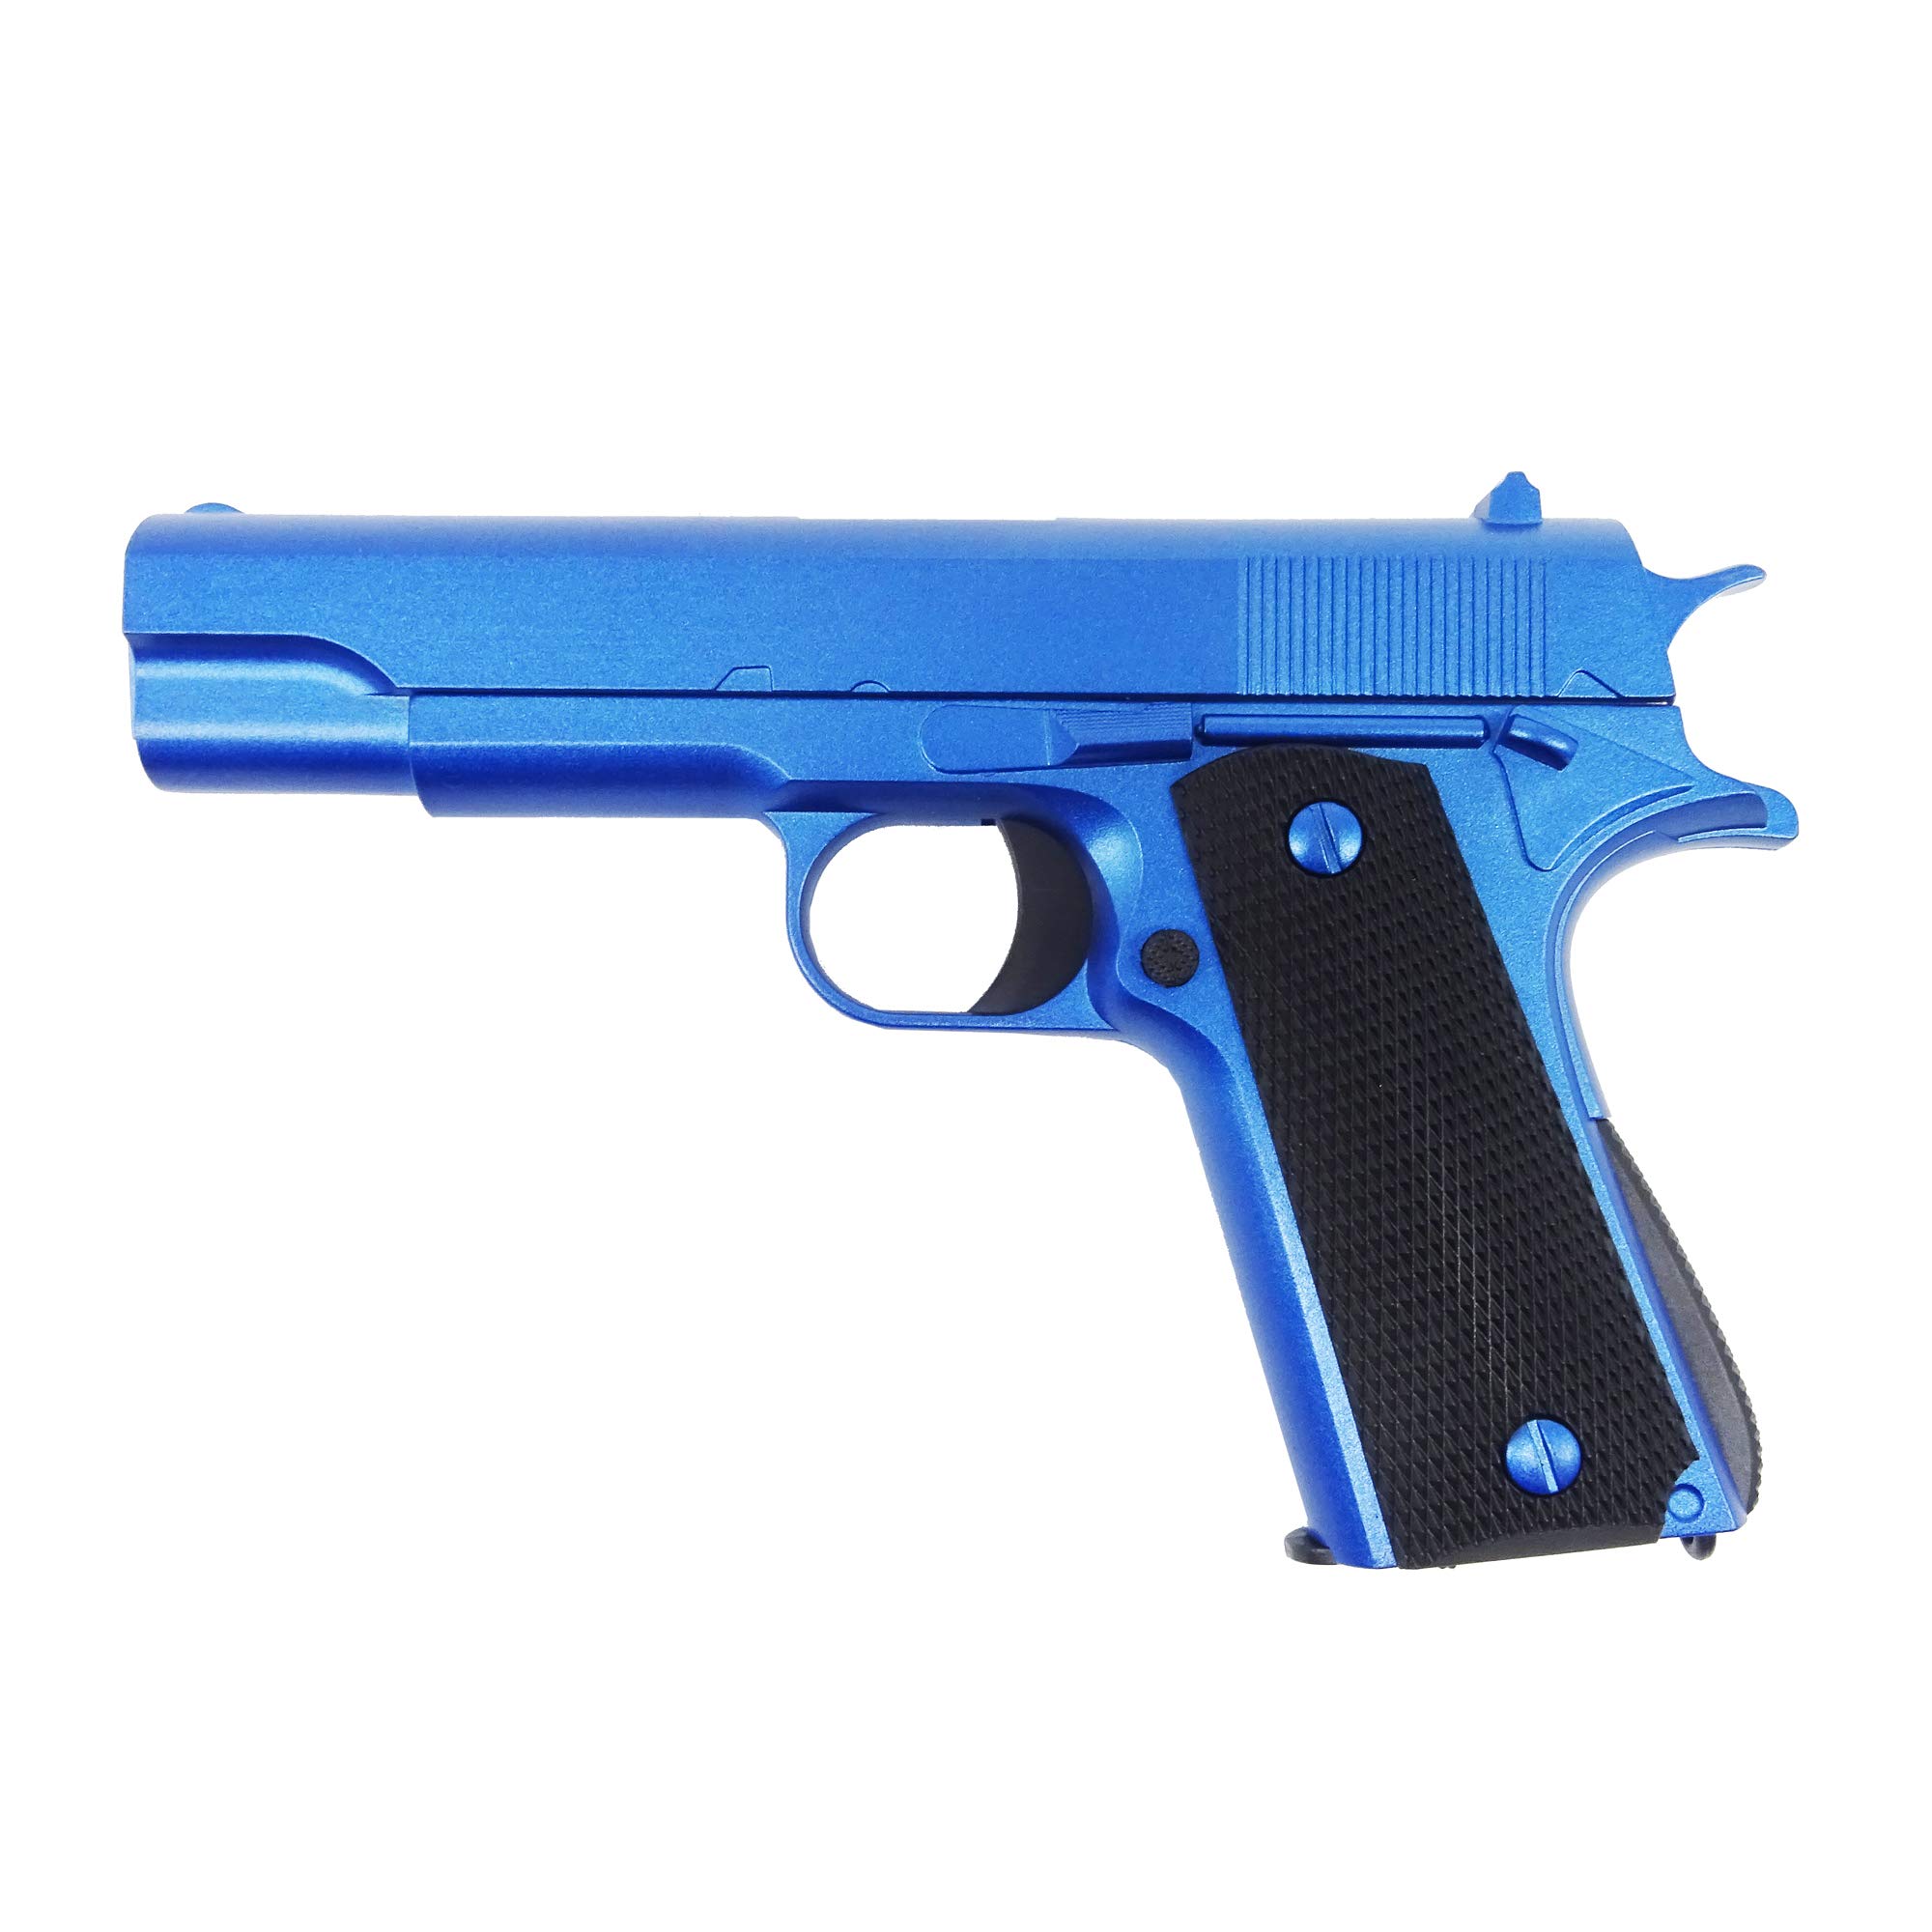 Softair Pistole Voll Metall Rayline RV11 Blue, Nachbau im Maßstab 1:1, Länge: 18,6cm, Gewicht: 320g, Kaliber: 6mm, Farbe: blau - (unter 0,5 Joule - ab 14 Jahre)